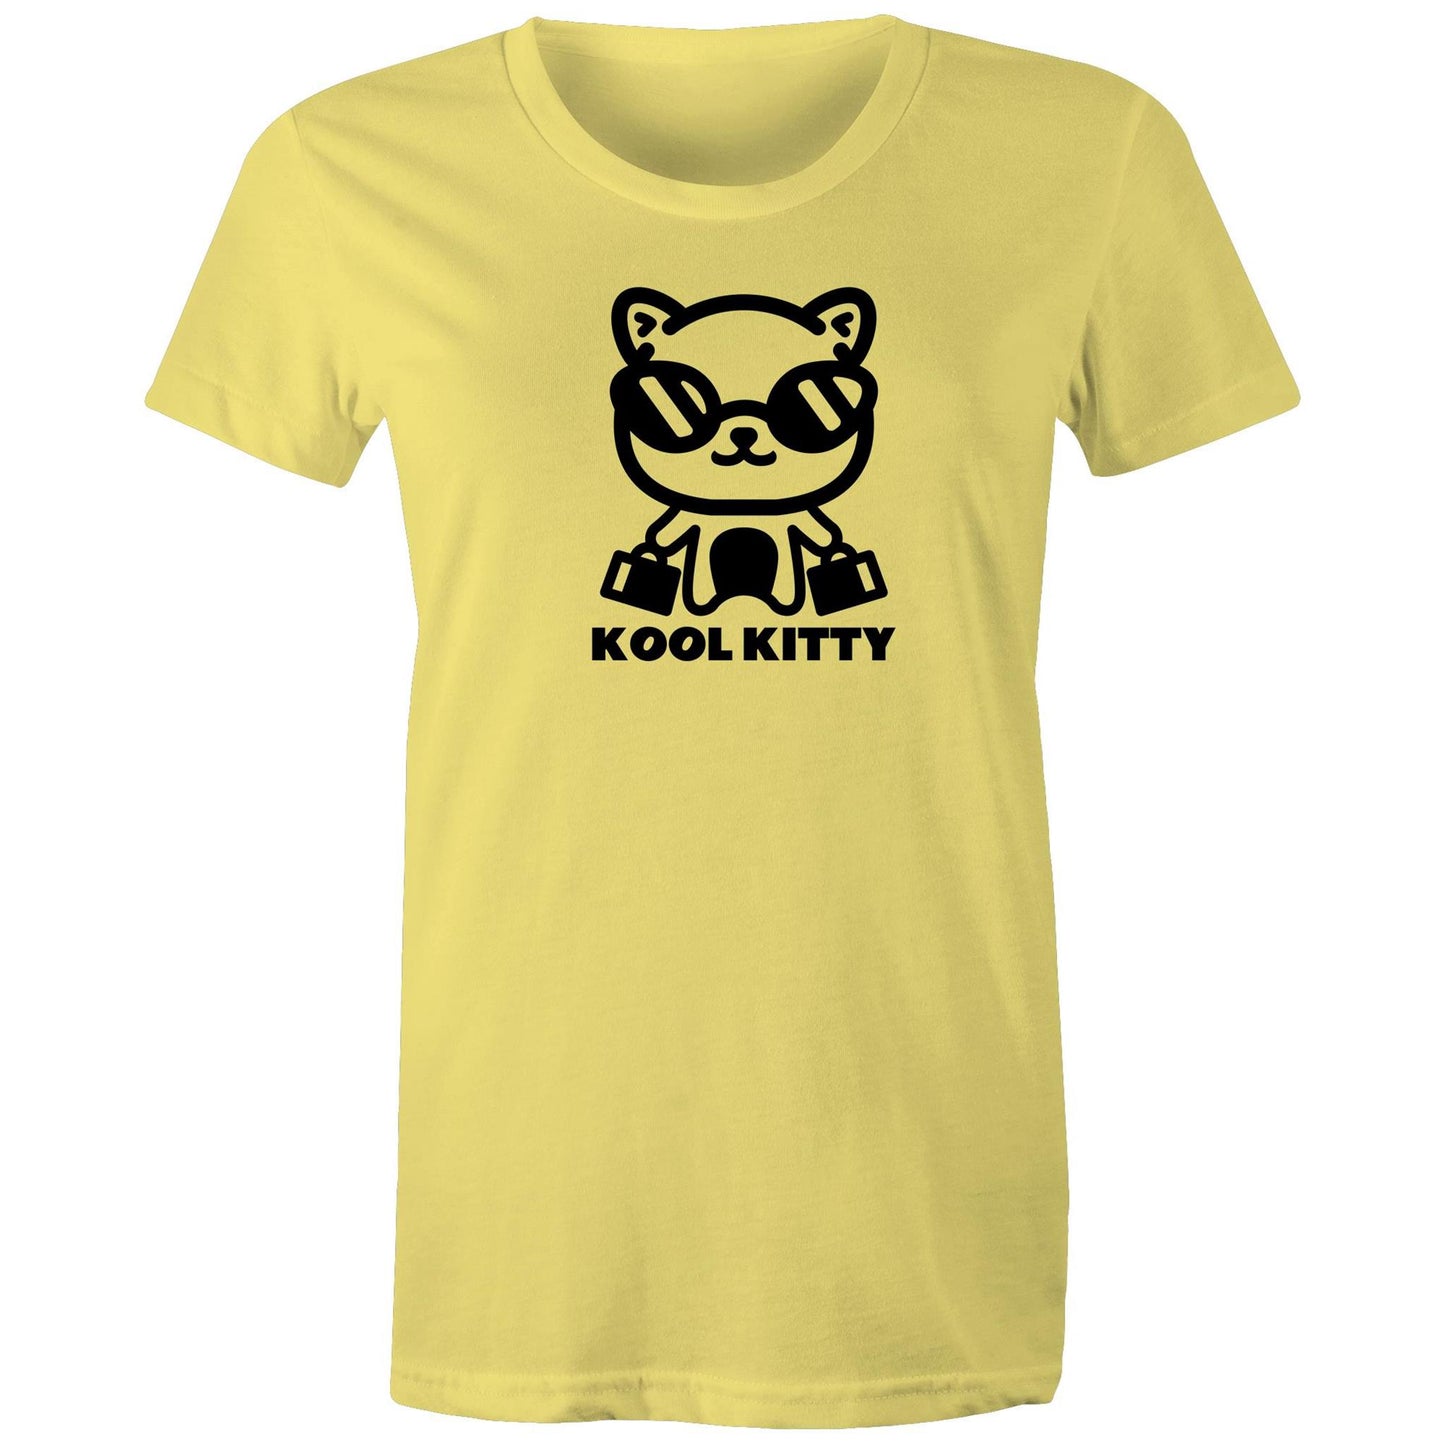 Kool Kitty Womens TShirt